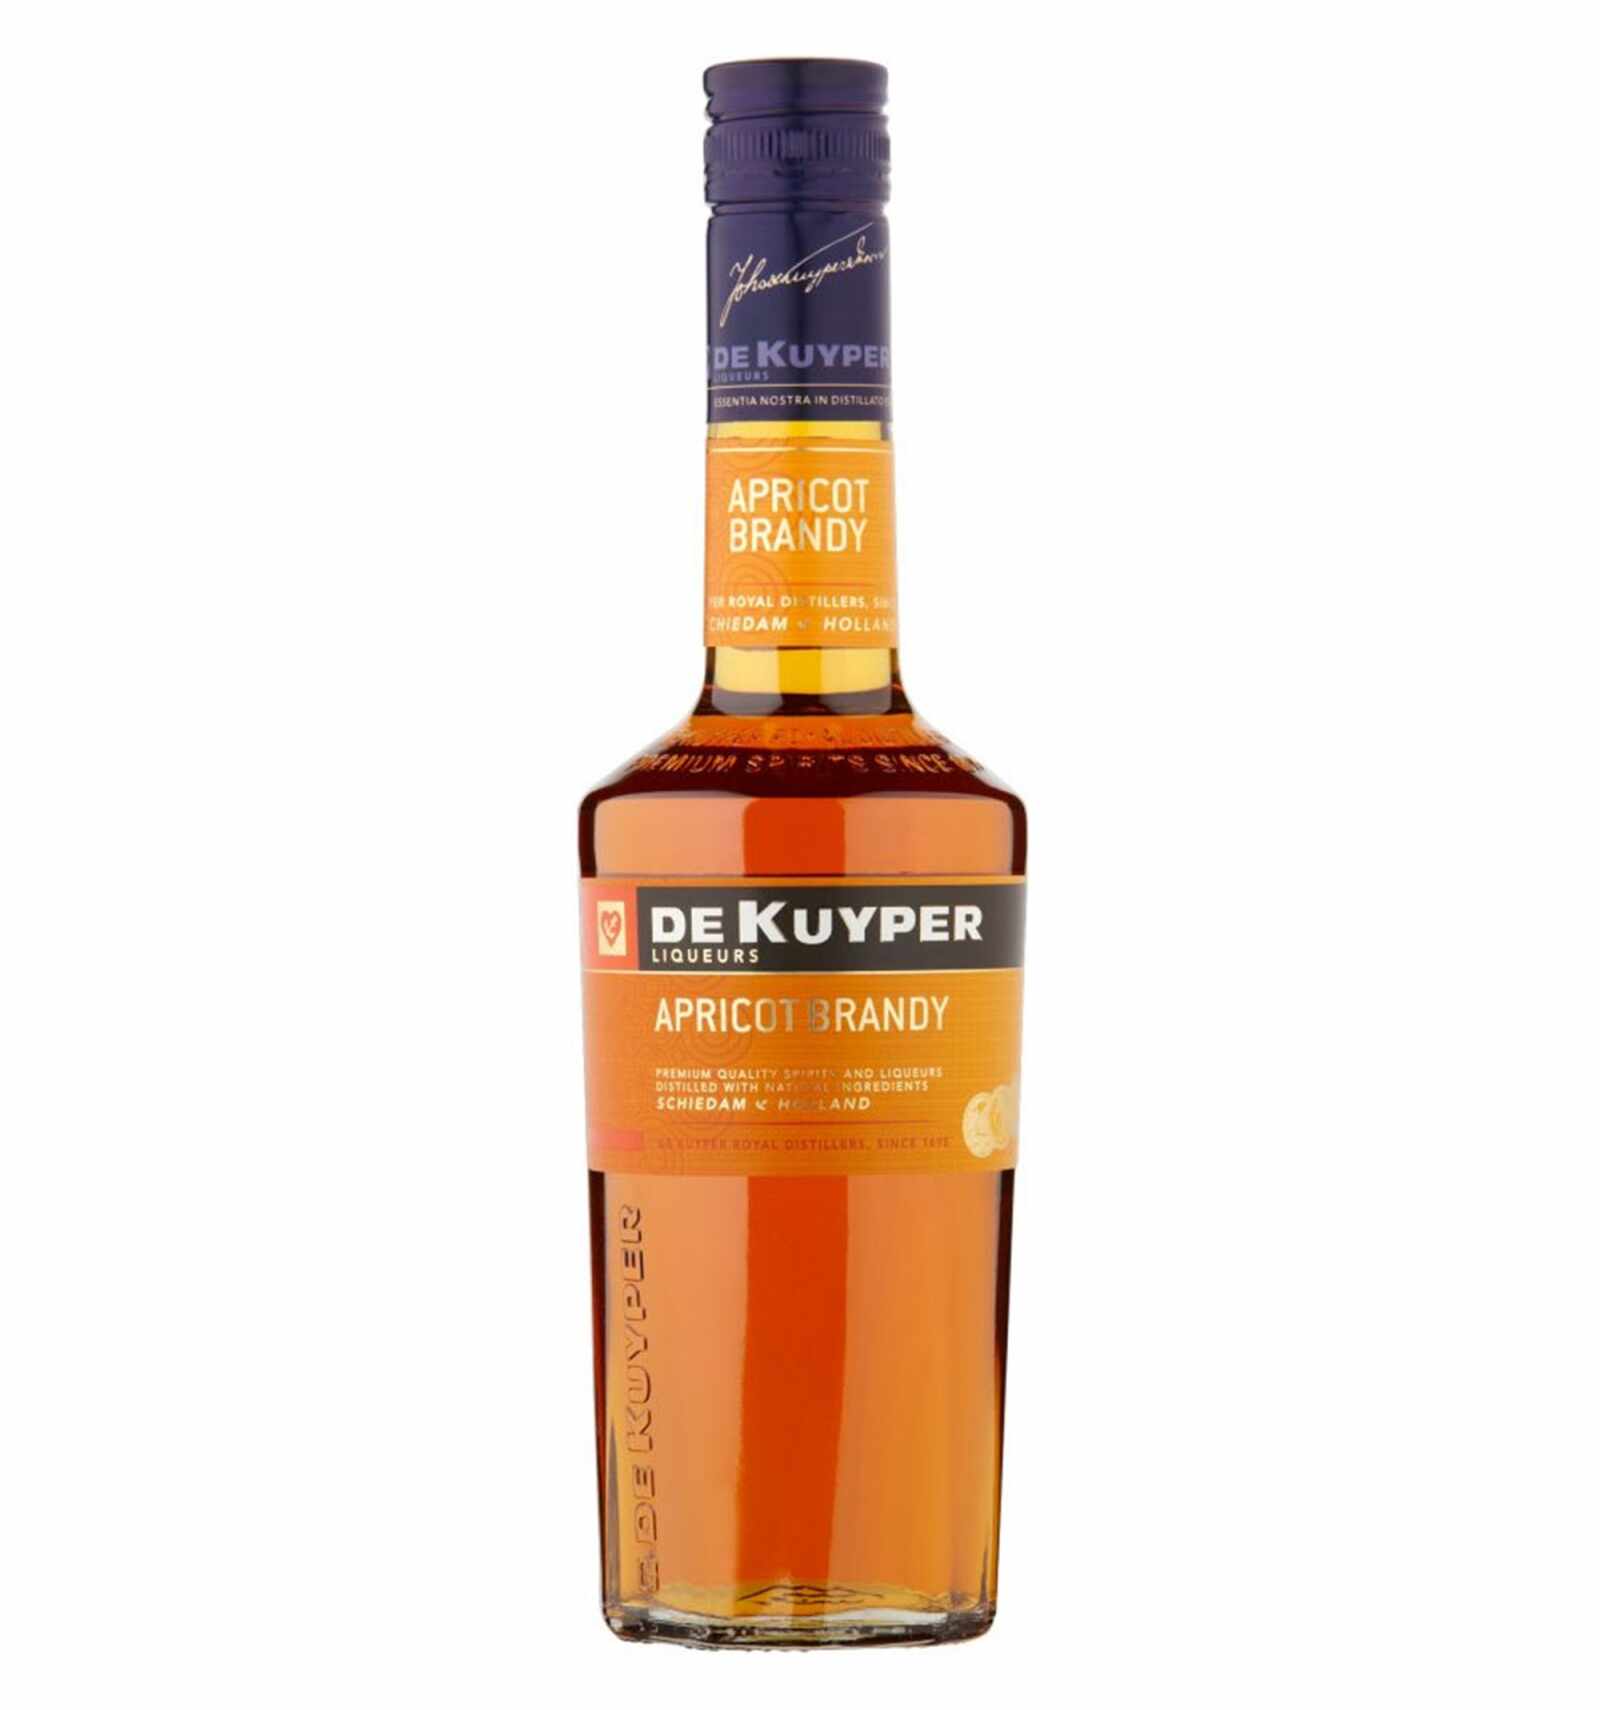 Lichior De Kuyper Apricot Brandy 20% alc., 0.7L, Olanda